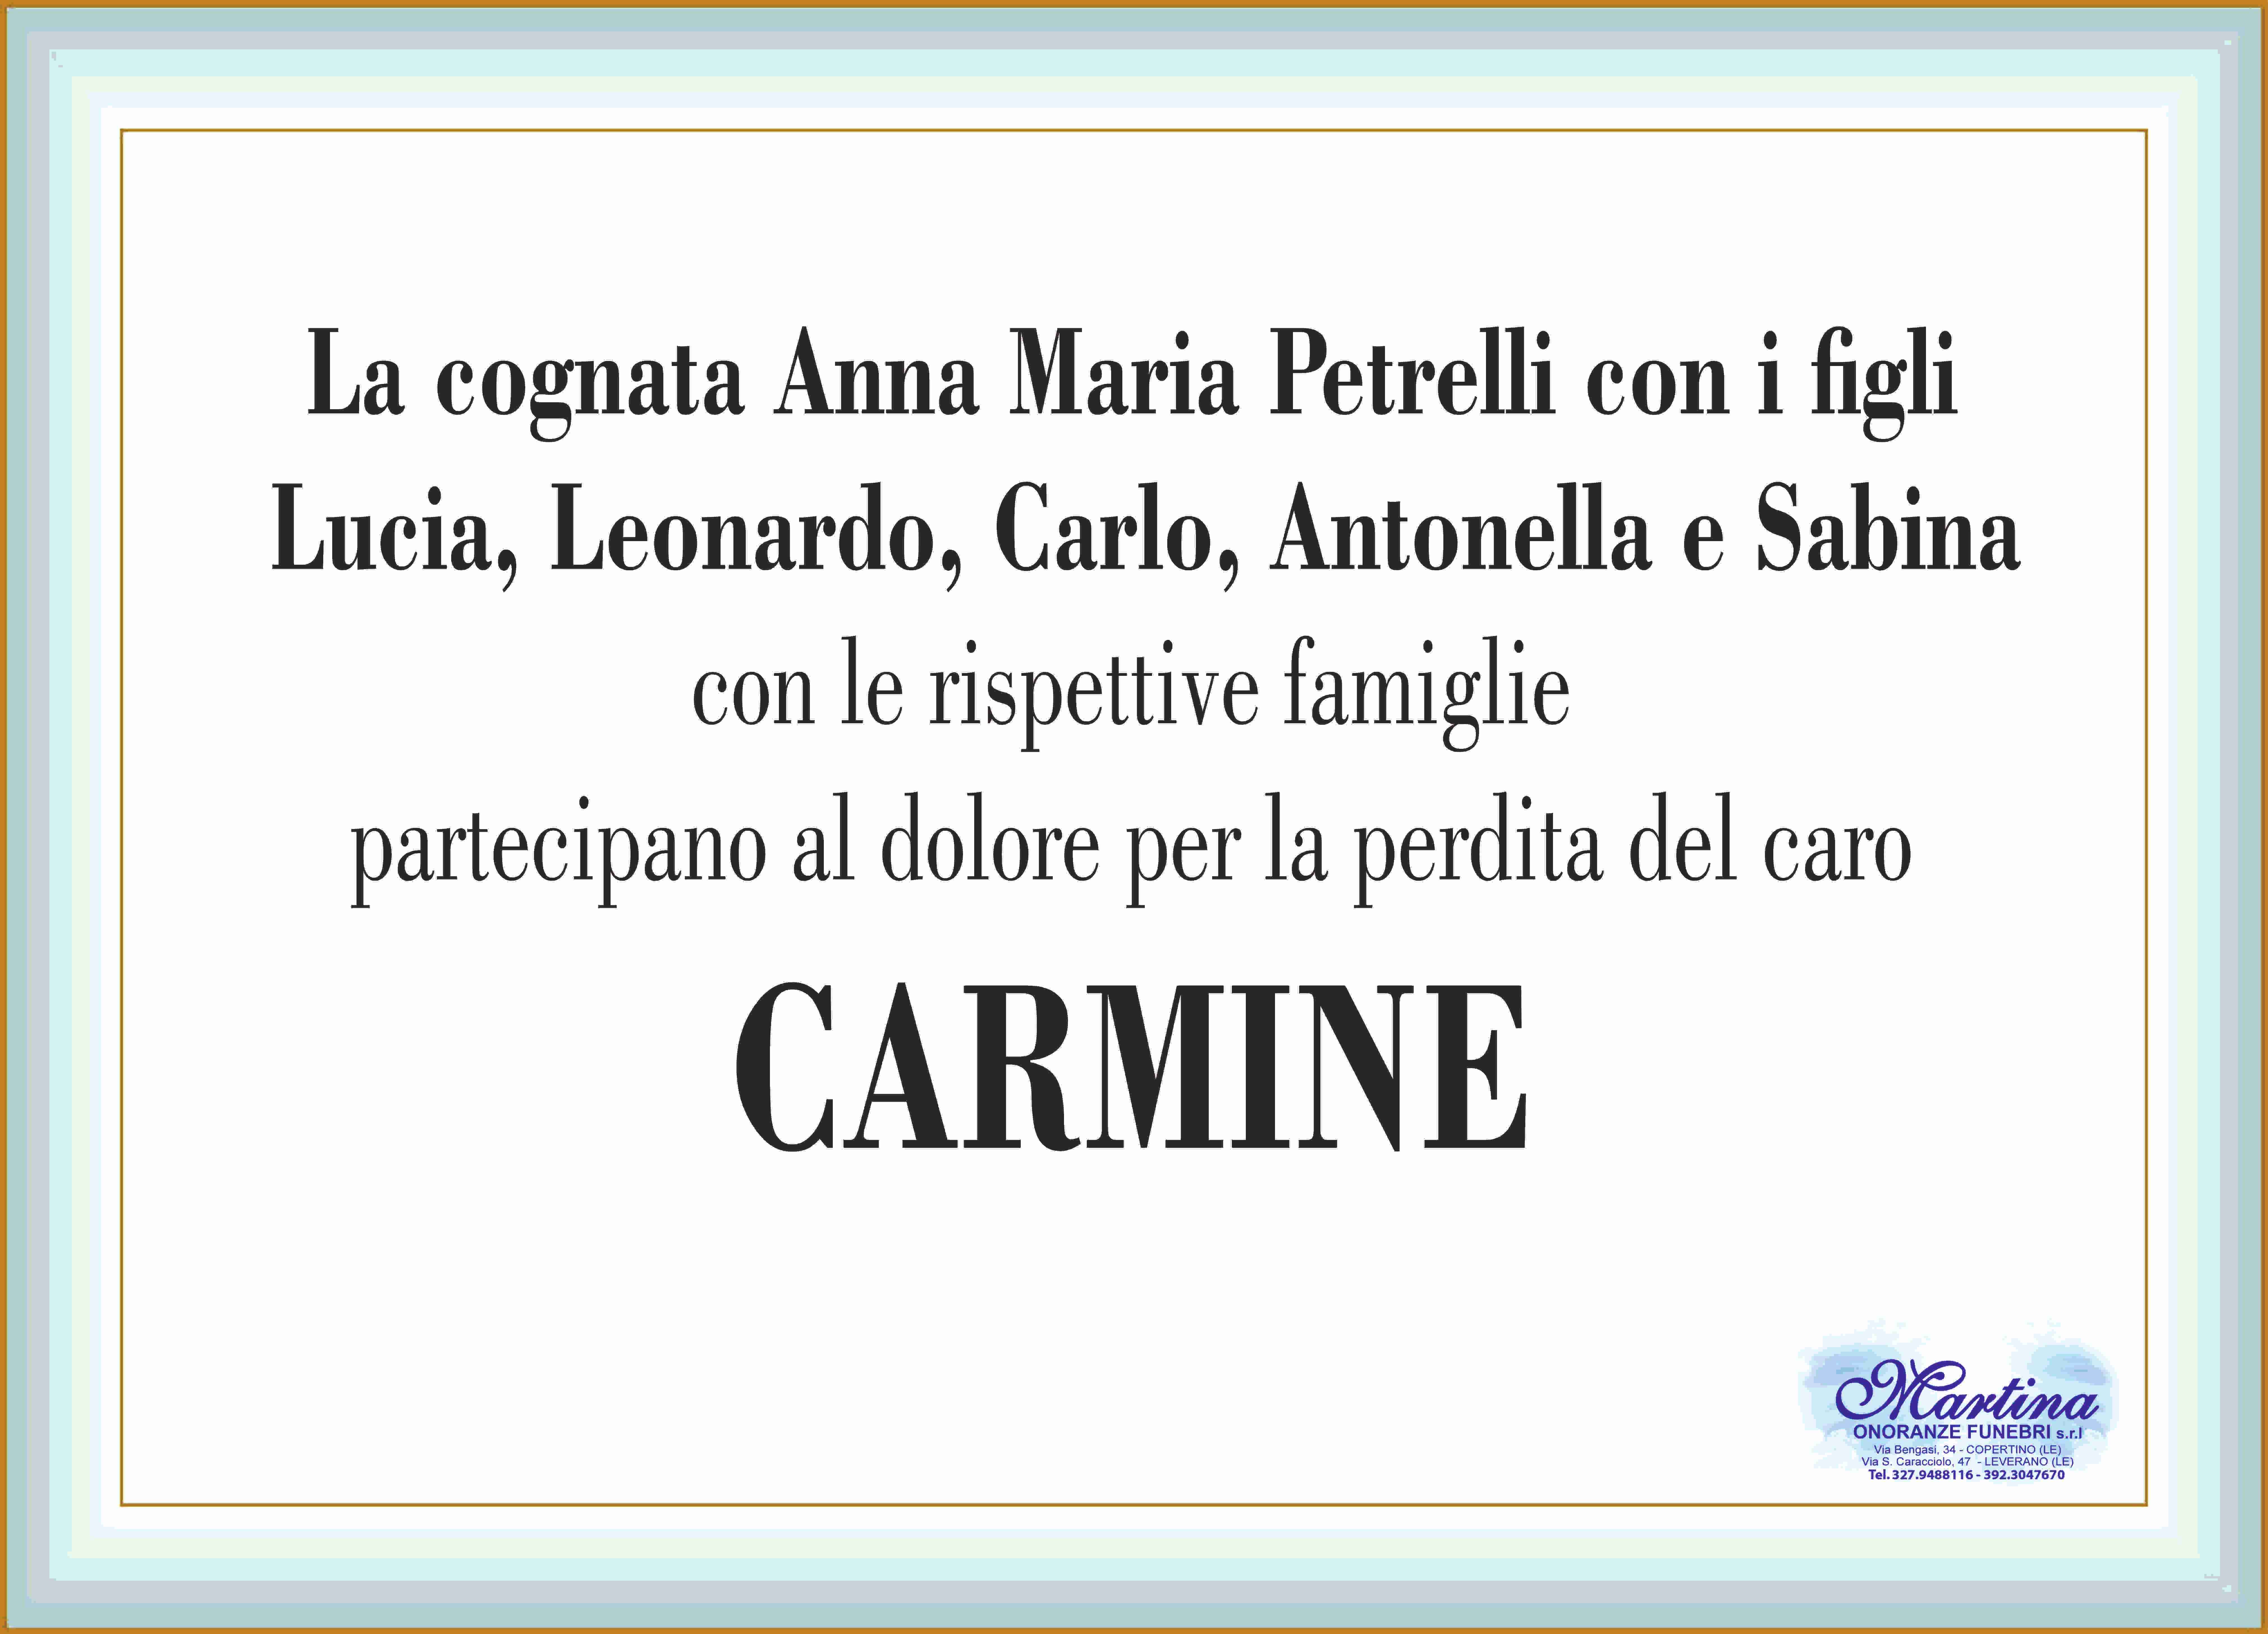 Carmine Schito